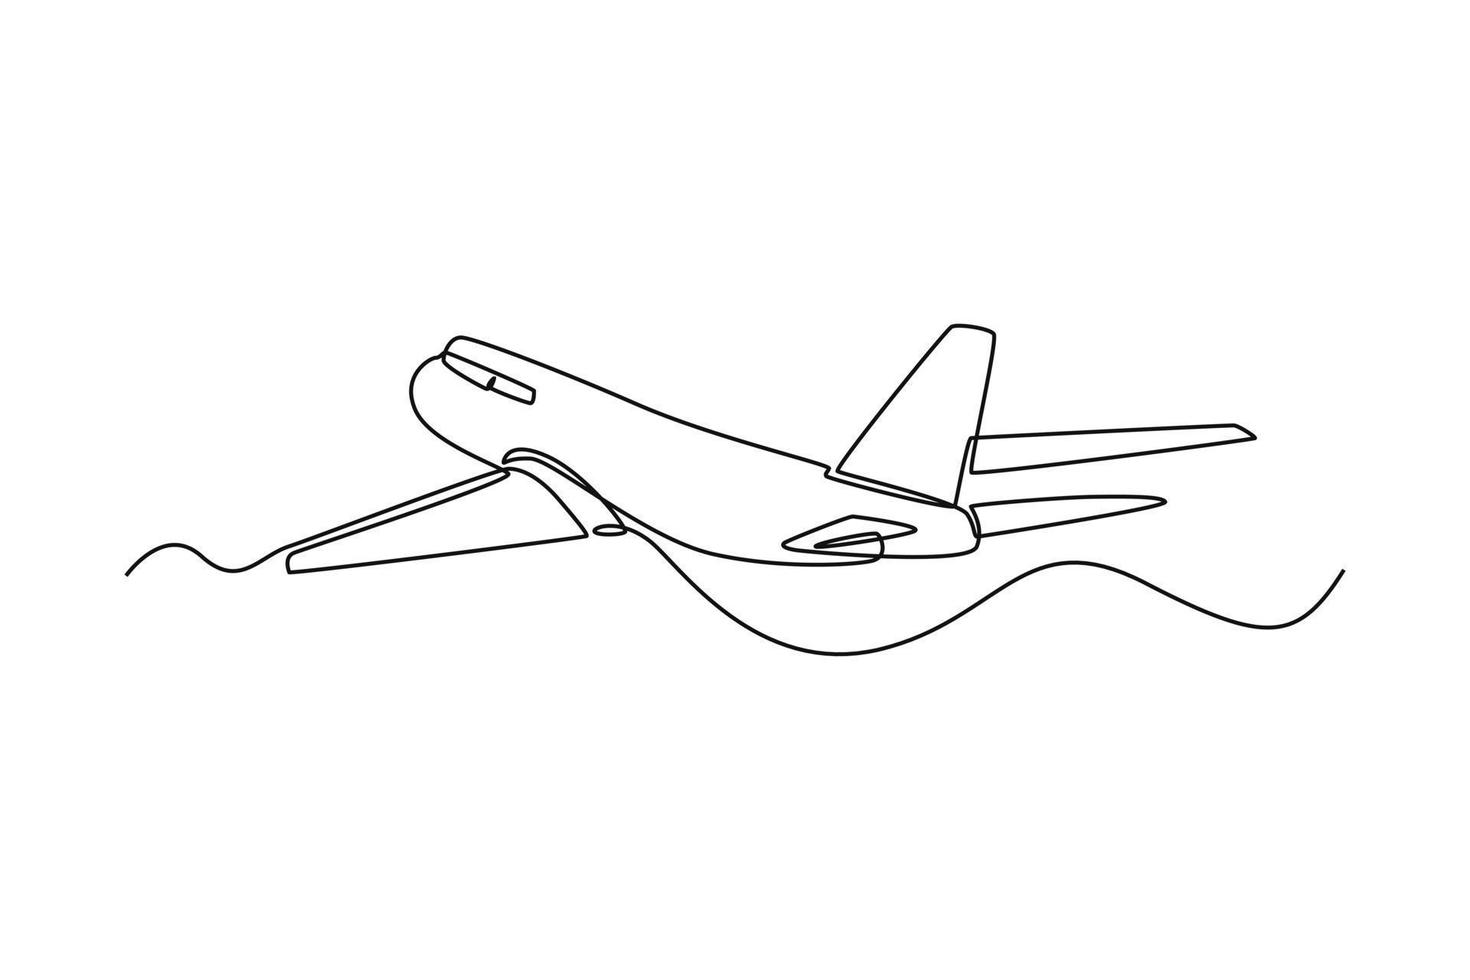 avión de dibujo de una sola línea. concepto de transporte aéreo. ilustración de vector gráfico de diseño de dibujo de línea continua.